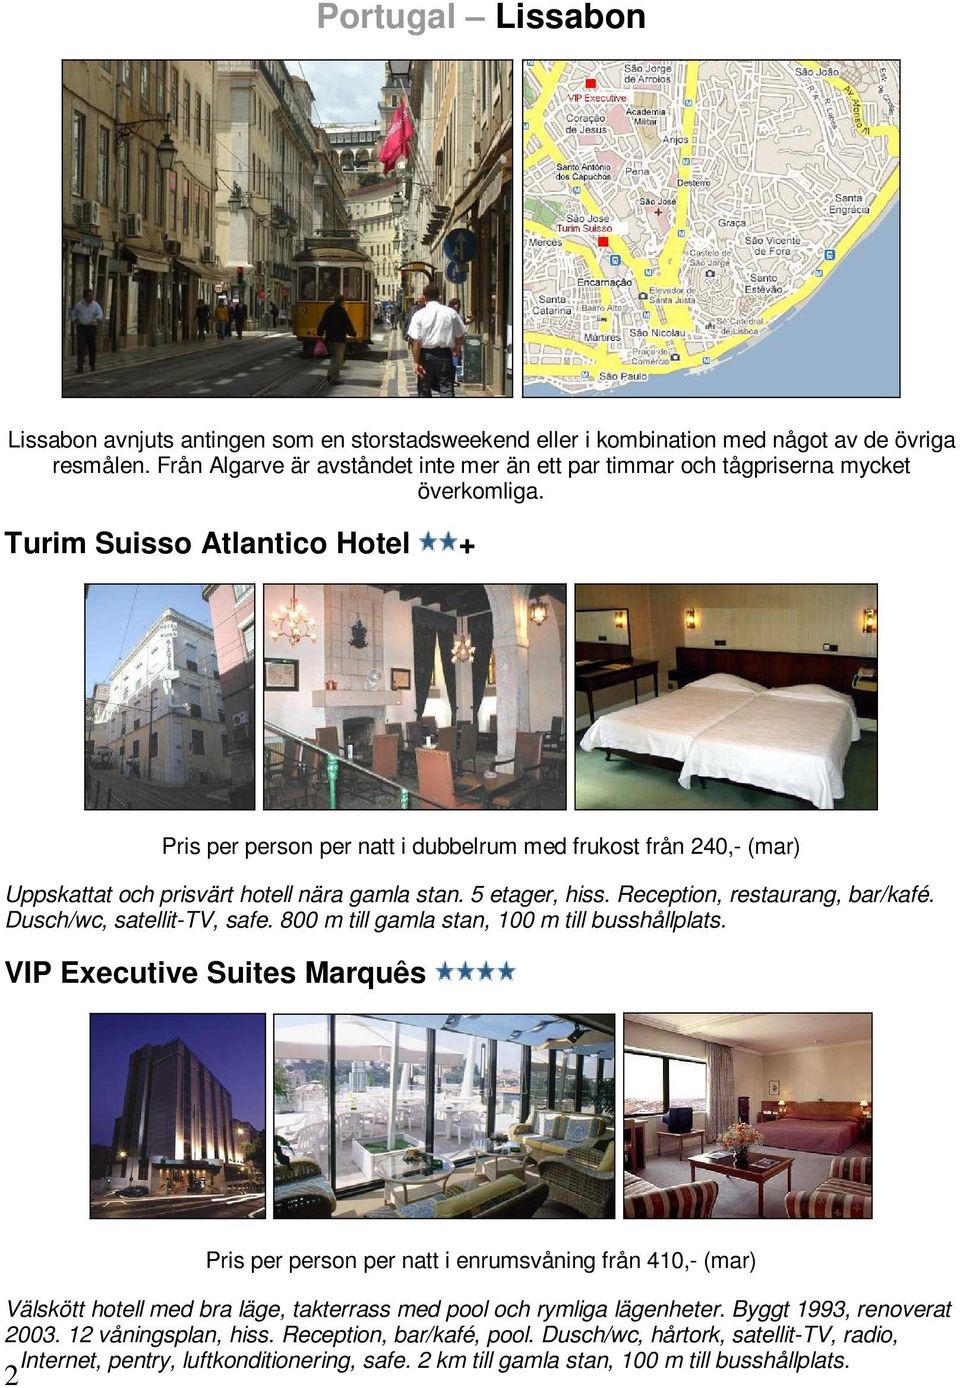 Turim Suisso Atlantico Hotel + Pris per person per natt i dubbelrum med frukost från 240,- (mar) Uppskattat och prisvärt hotell nära gamla stan. 5 etager, hiss. Reception, restaurang, bar/kafé.